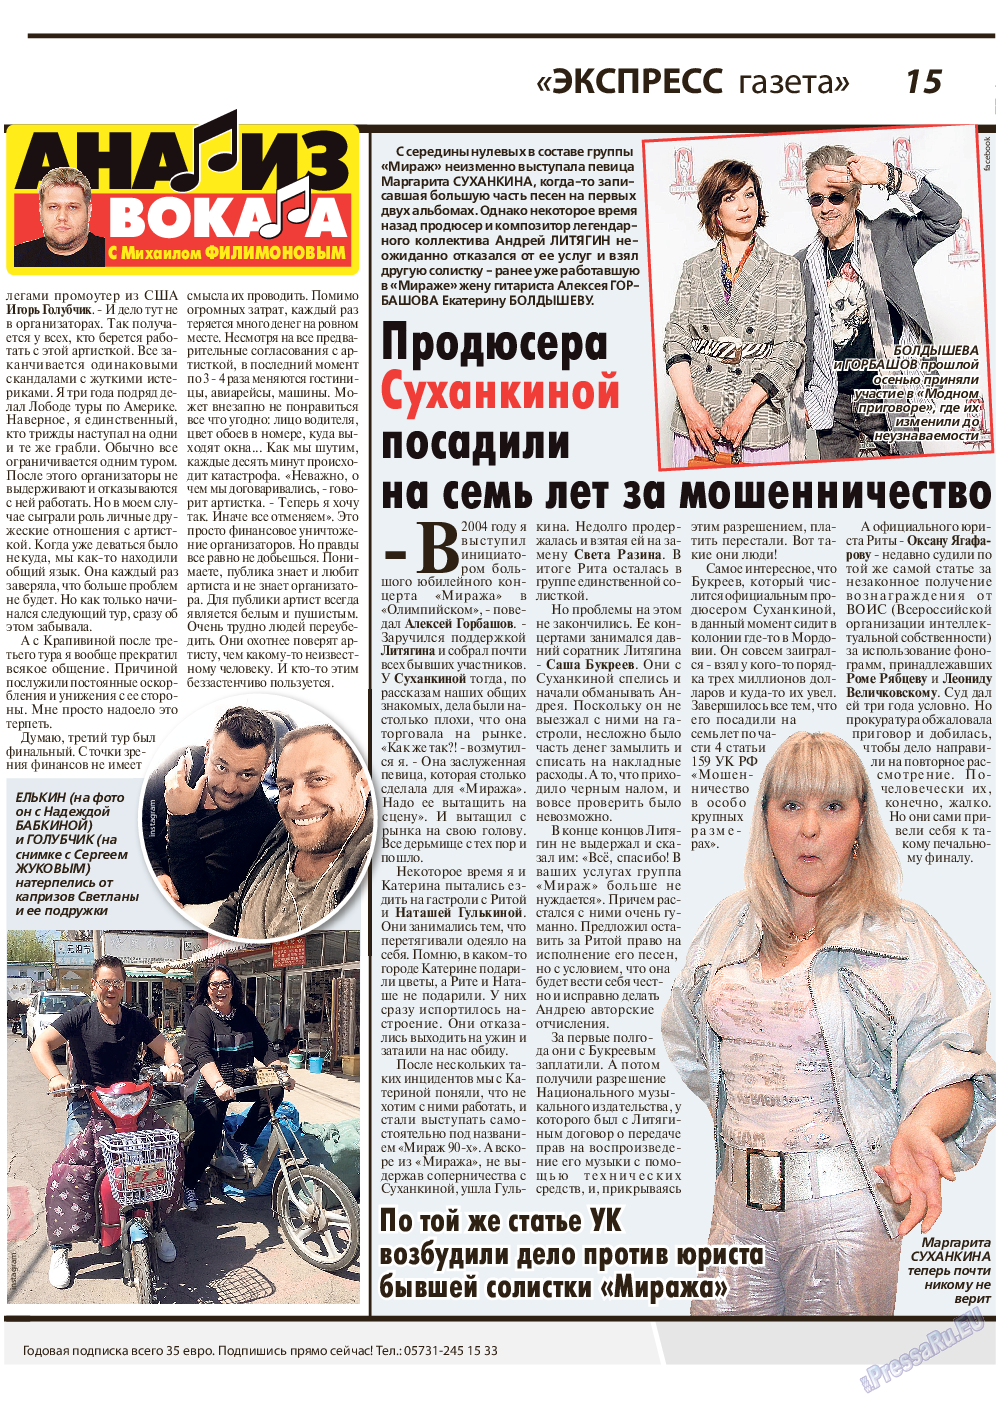 Экспресс газета, газета. 2019 №6 стр.15